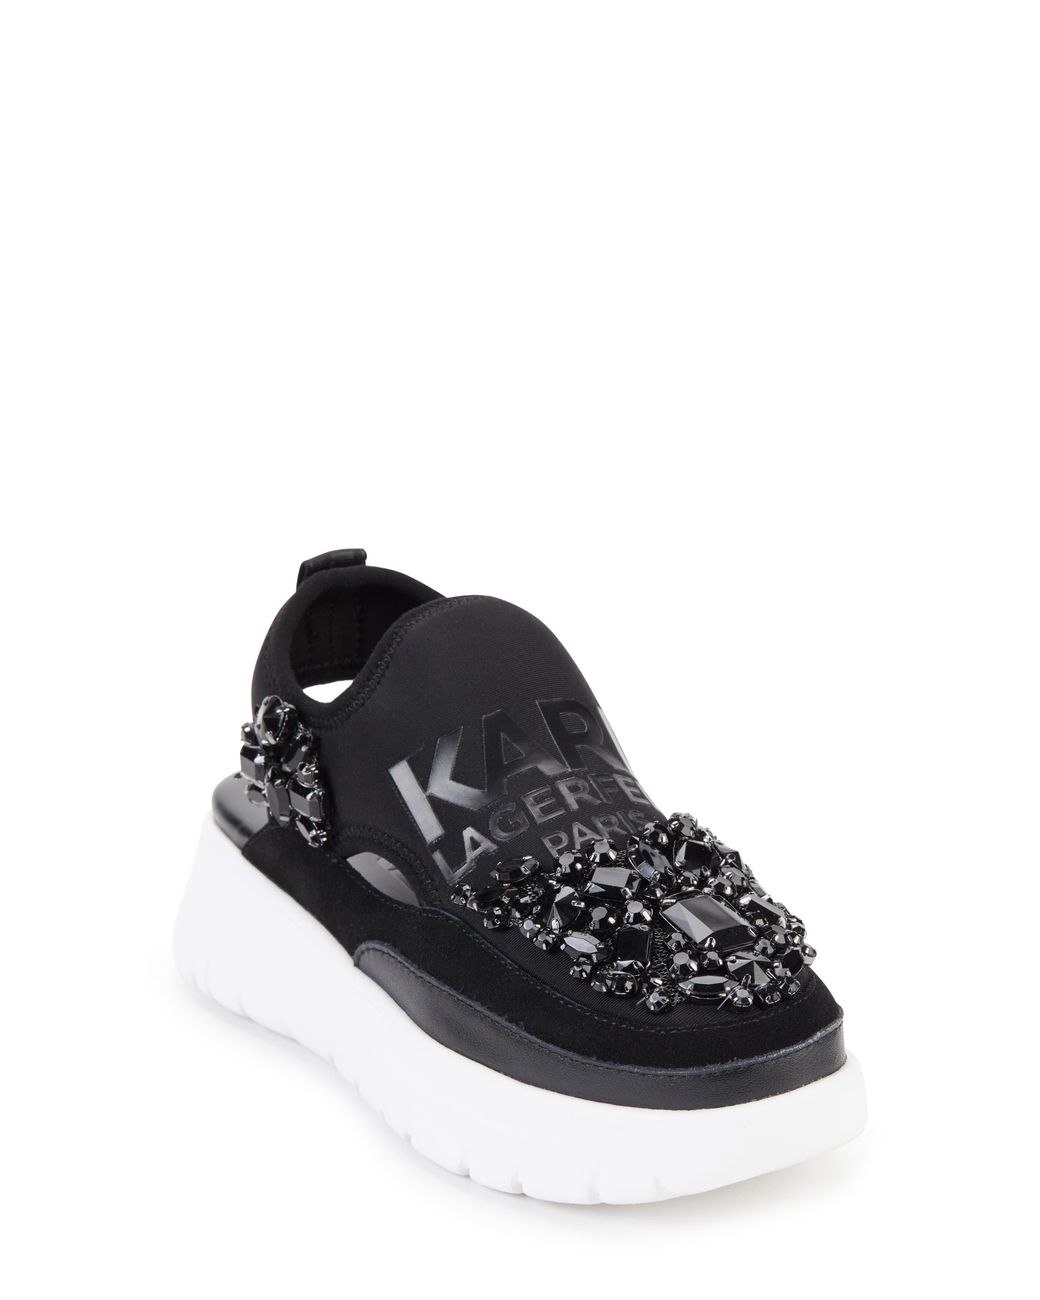 Karl Lagerfeld Mika Crystal Slip-on Platform Sneaker in Black | Lyst